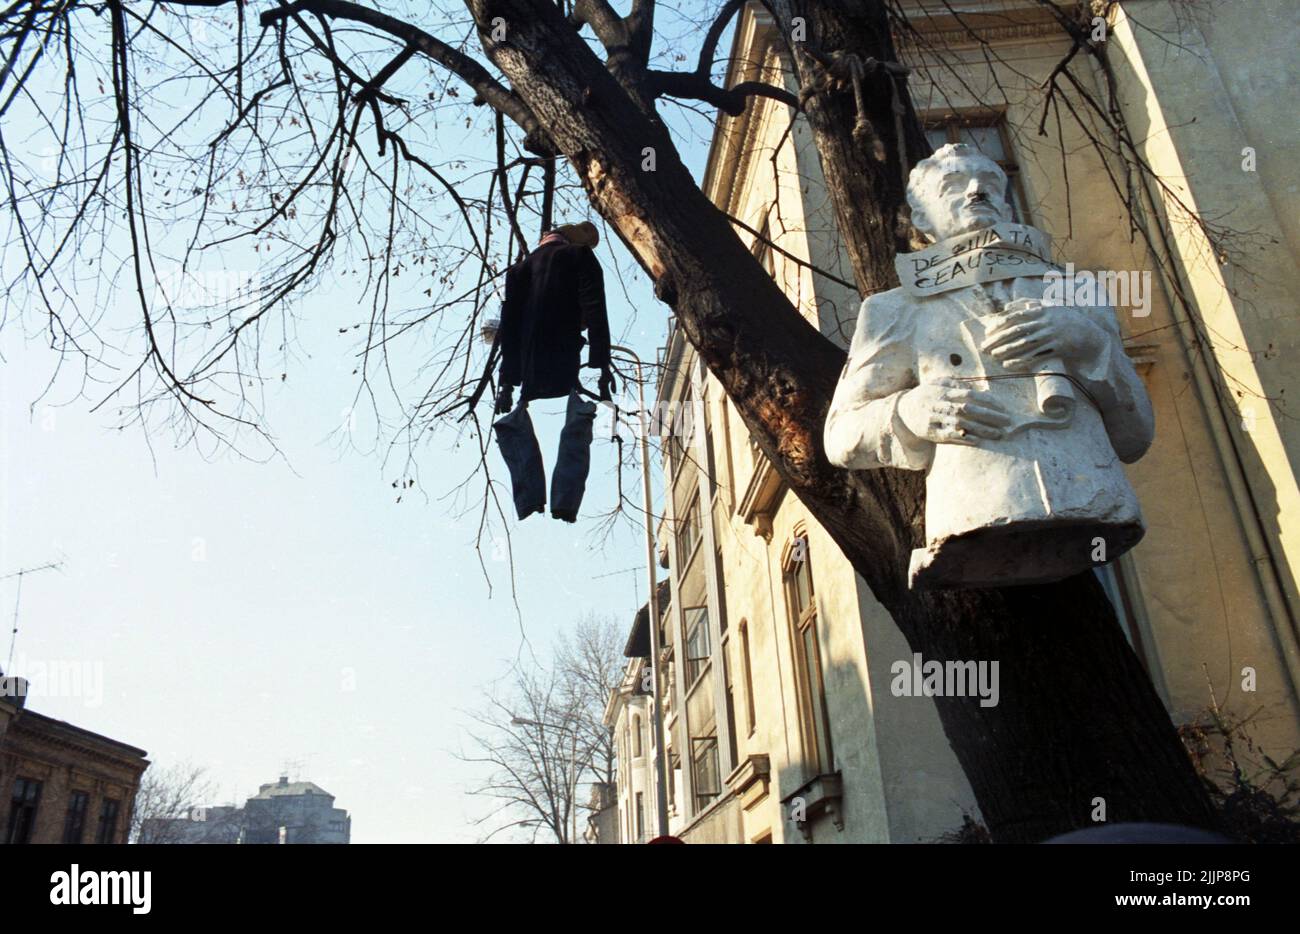 Bucarest, Romania, gennaio 1990. Poche settimane dopo la rivoluzione anti-comunista, un busto dell'ex dittatore comunista Nicolae Ceausescu è appeso su un albero, con il messaggio "il tuo compleanno, Ceausescu" (che doveva essere il 23rd gennaio). Foto Stock